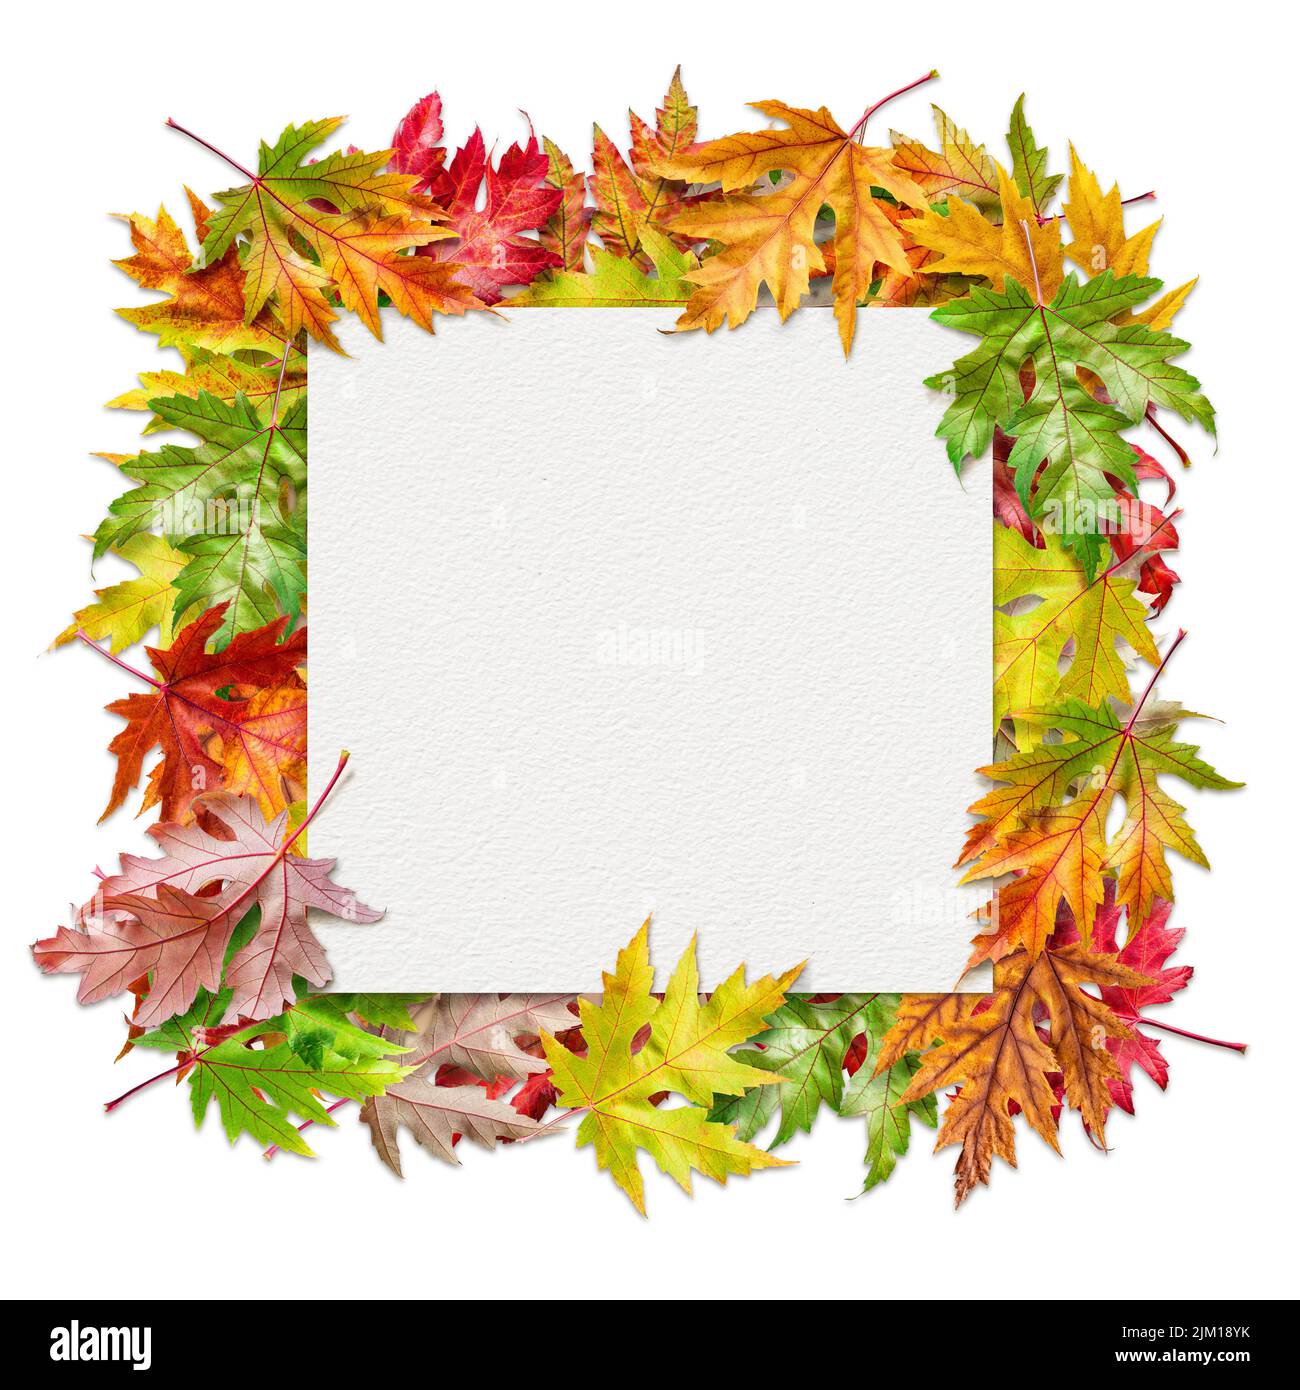 Foglio quadrato di carta di tessitura dell'acquerello fra le foglie colorate dell'acero d'autunno isolate su sfondo bianco. Foto Stock